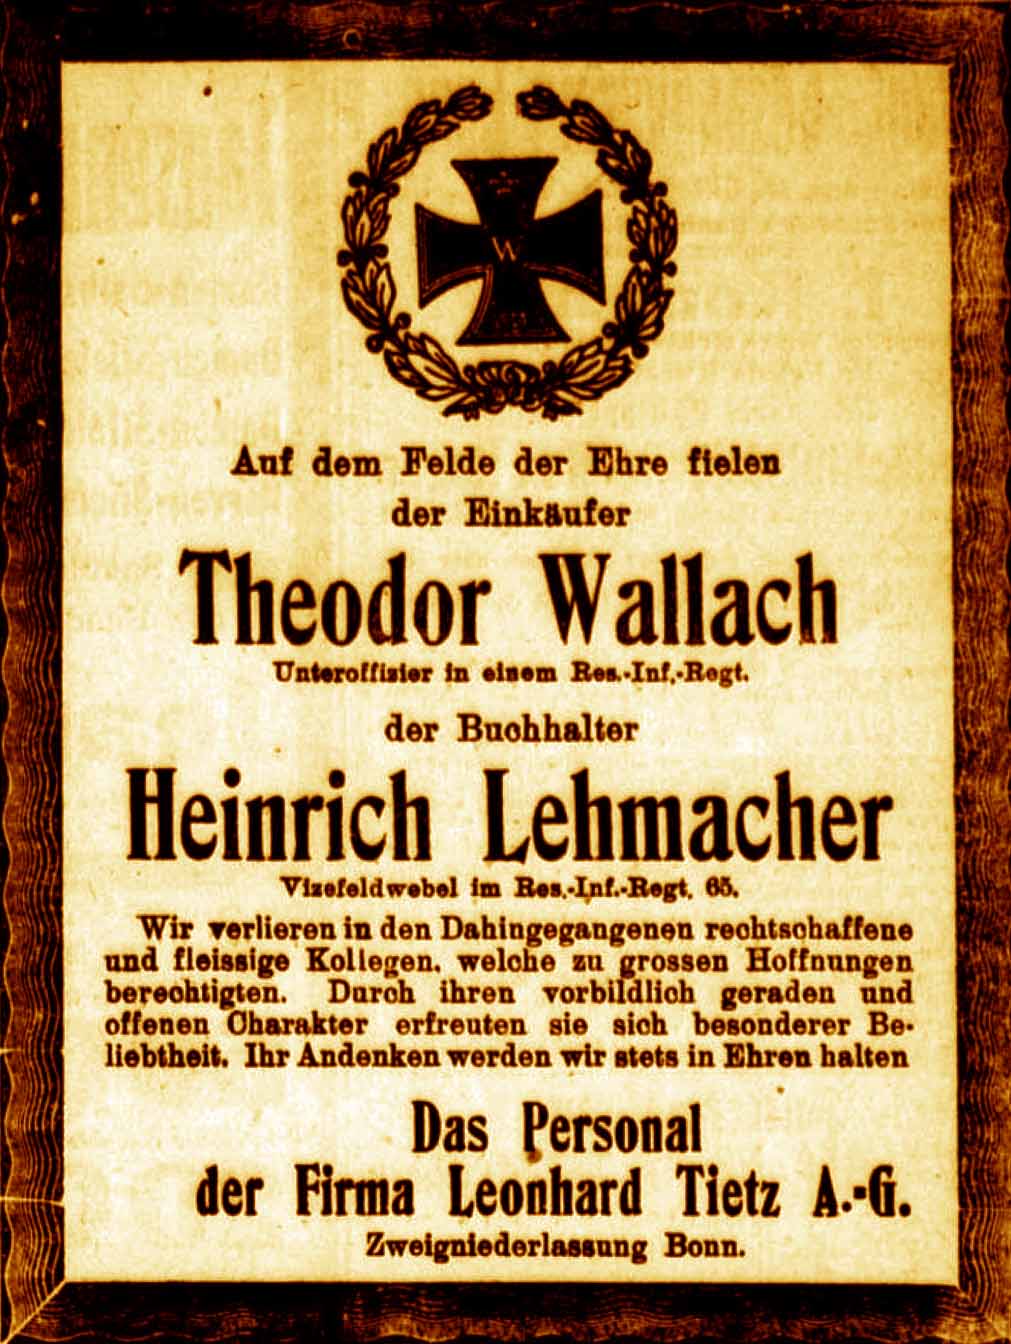 Anzeige im General-Anzeiger vom 13. Oktober 1916